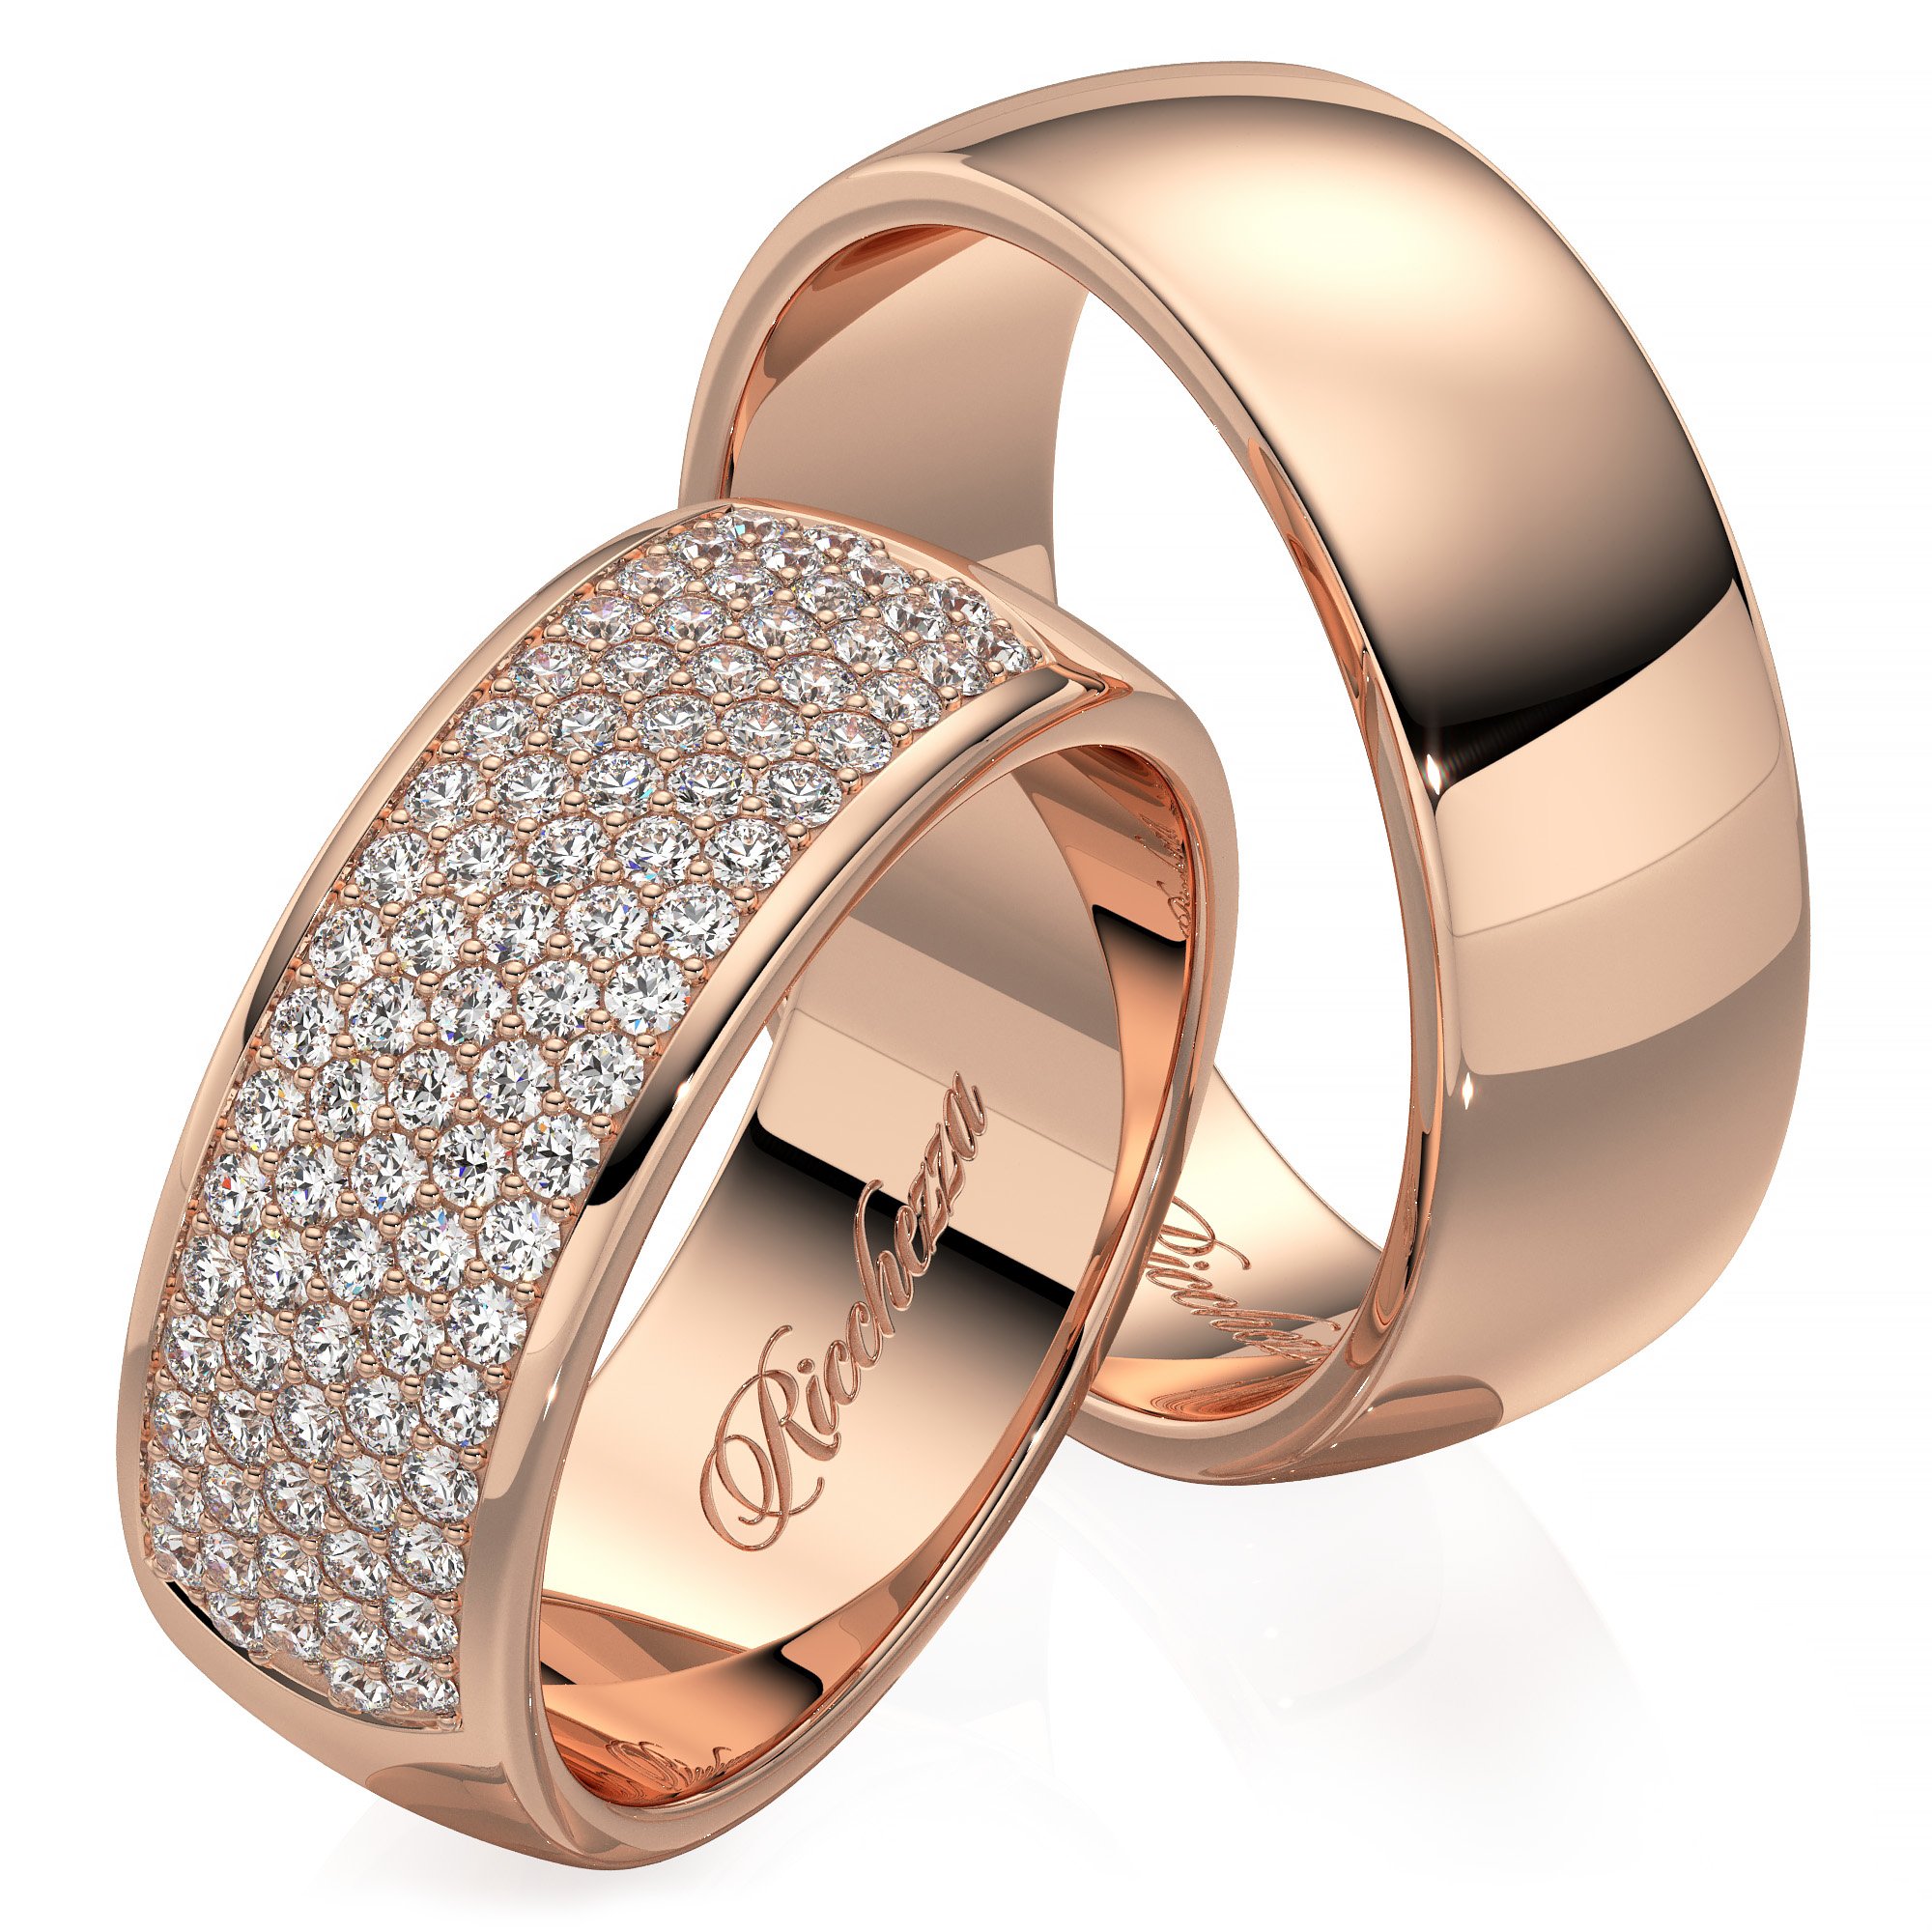 Золотые кольцо обручальное женские цена. Обручальные кольца 585. Кольца обручальные парные золотые Адамас. Обручальные кольца парные золотые 585. Обручальные кольца парные 585 Соколов.